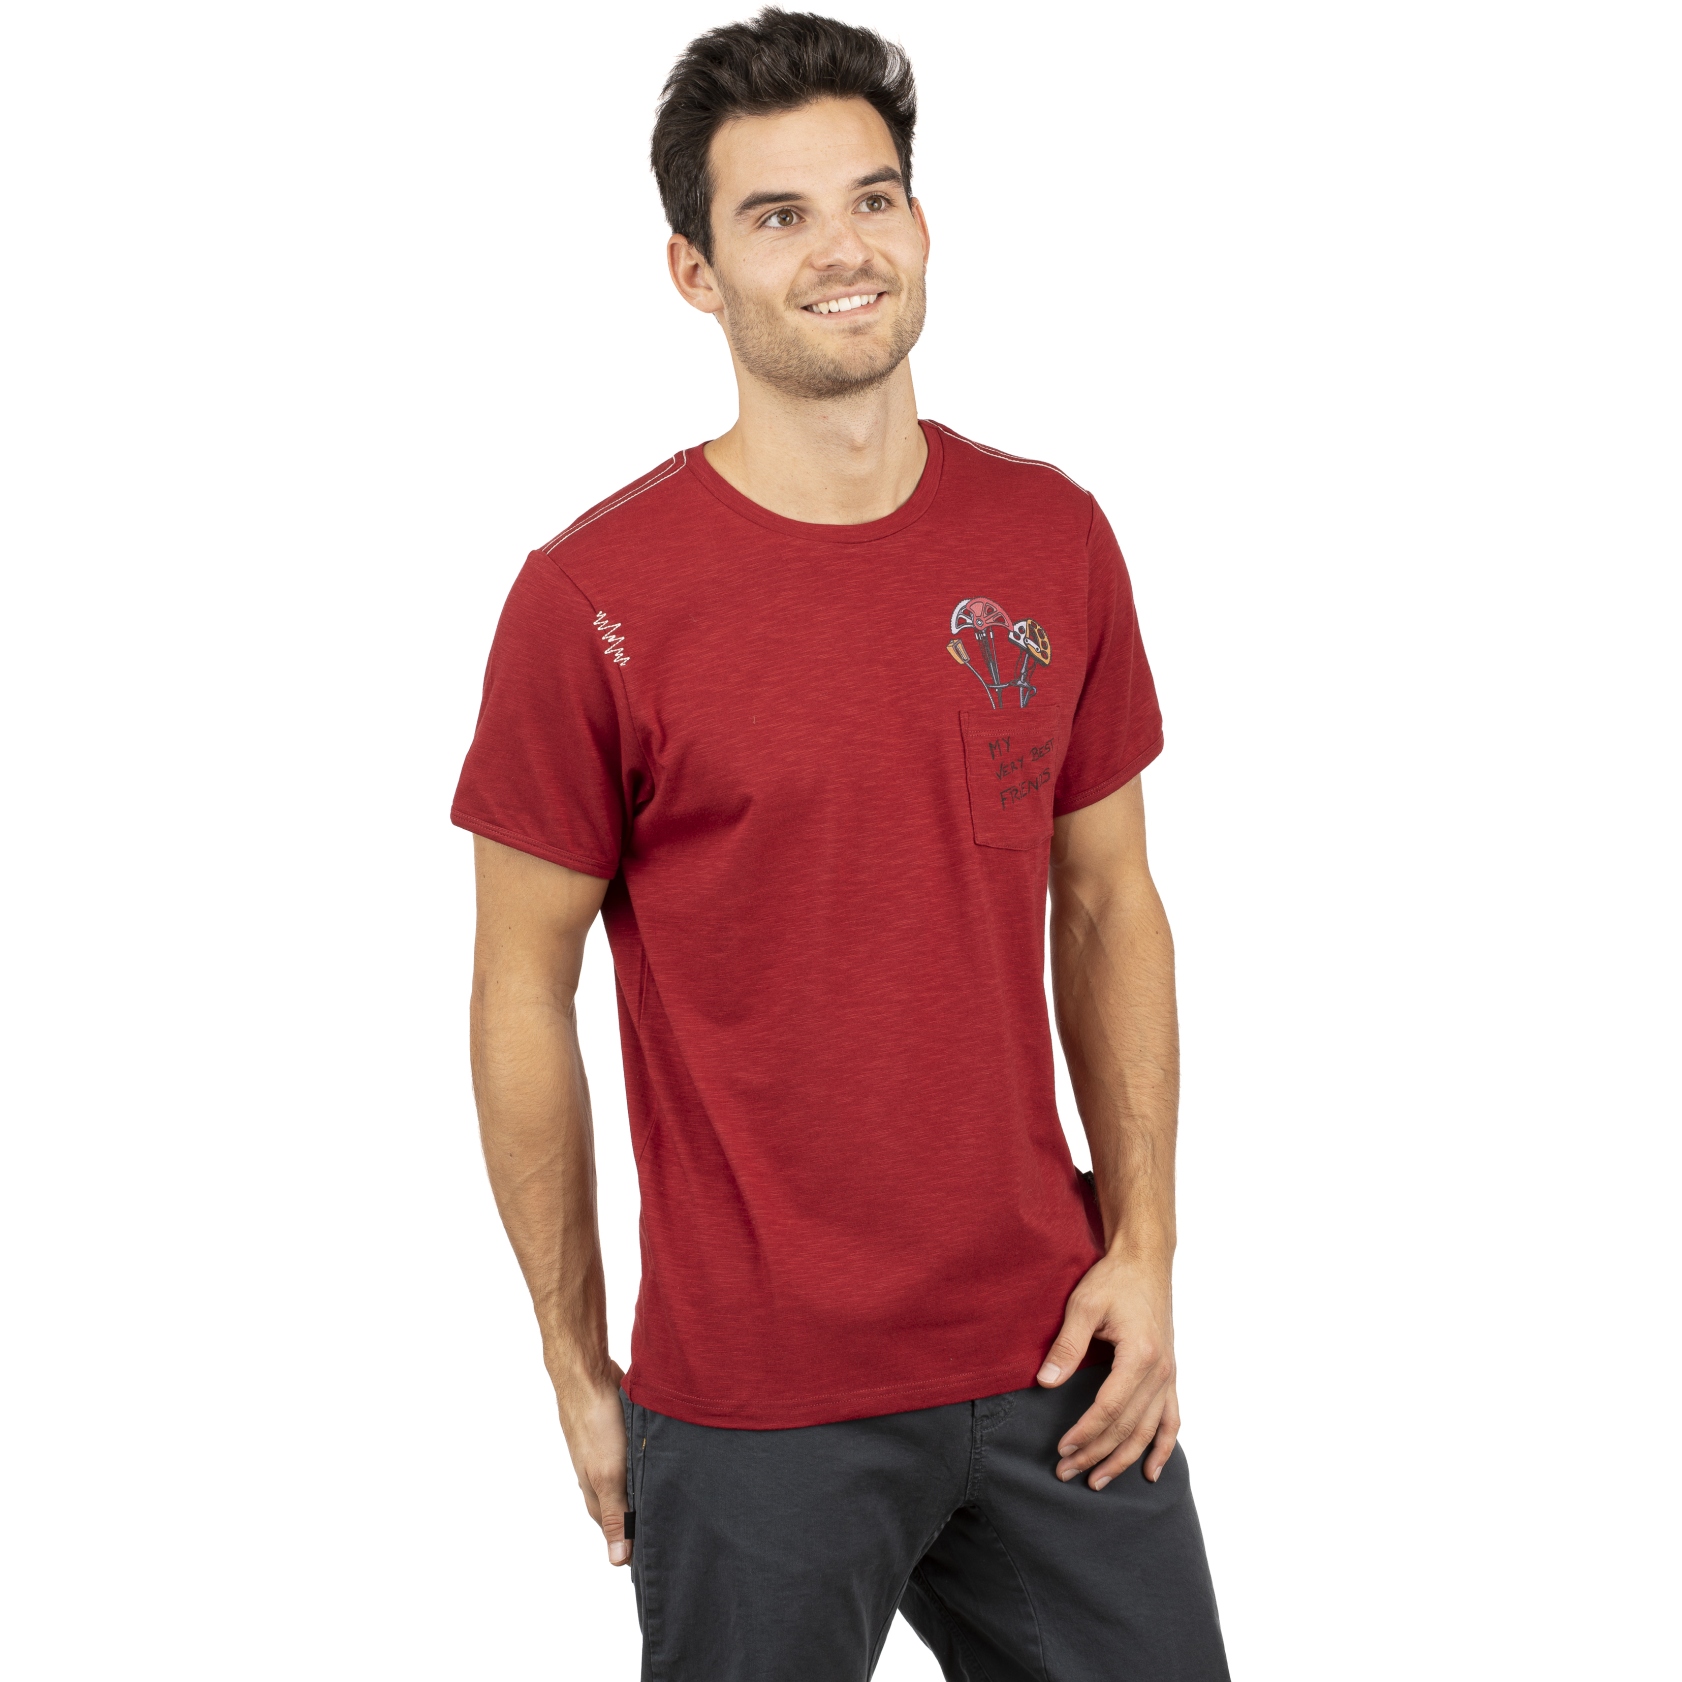 Produktbild von Chillaz Pocket Friends T-Shirt - dark red